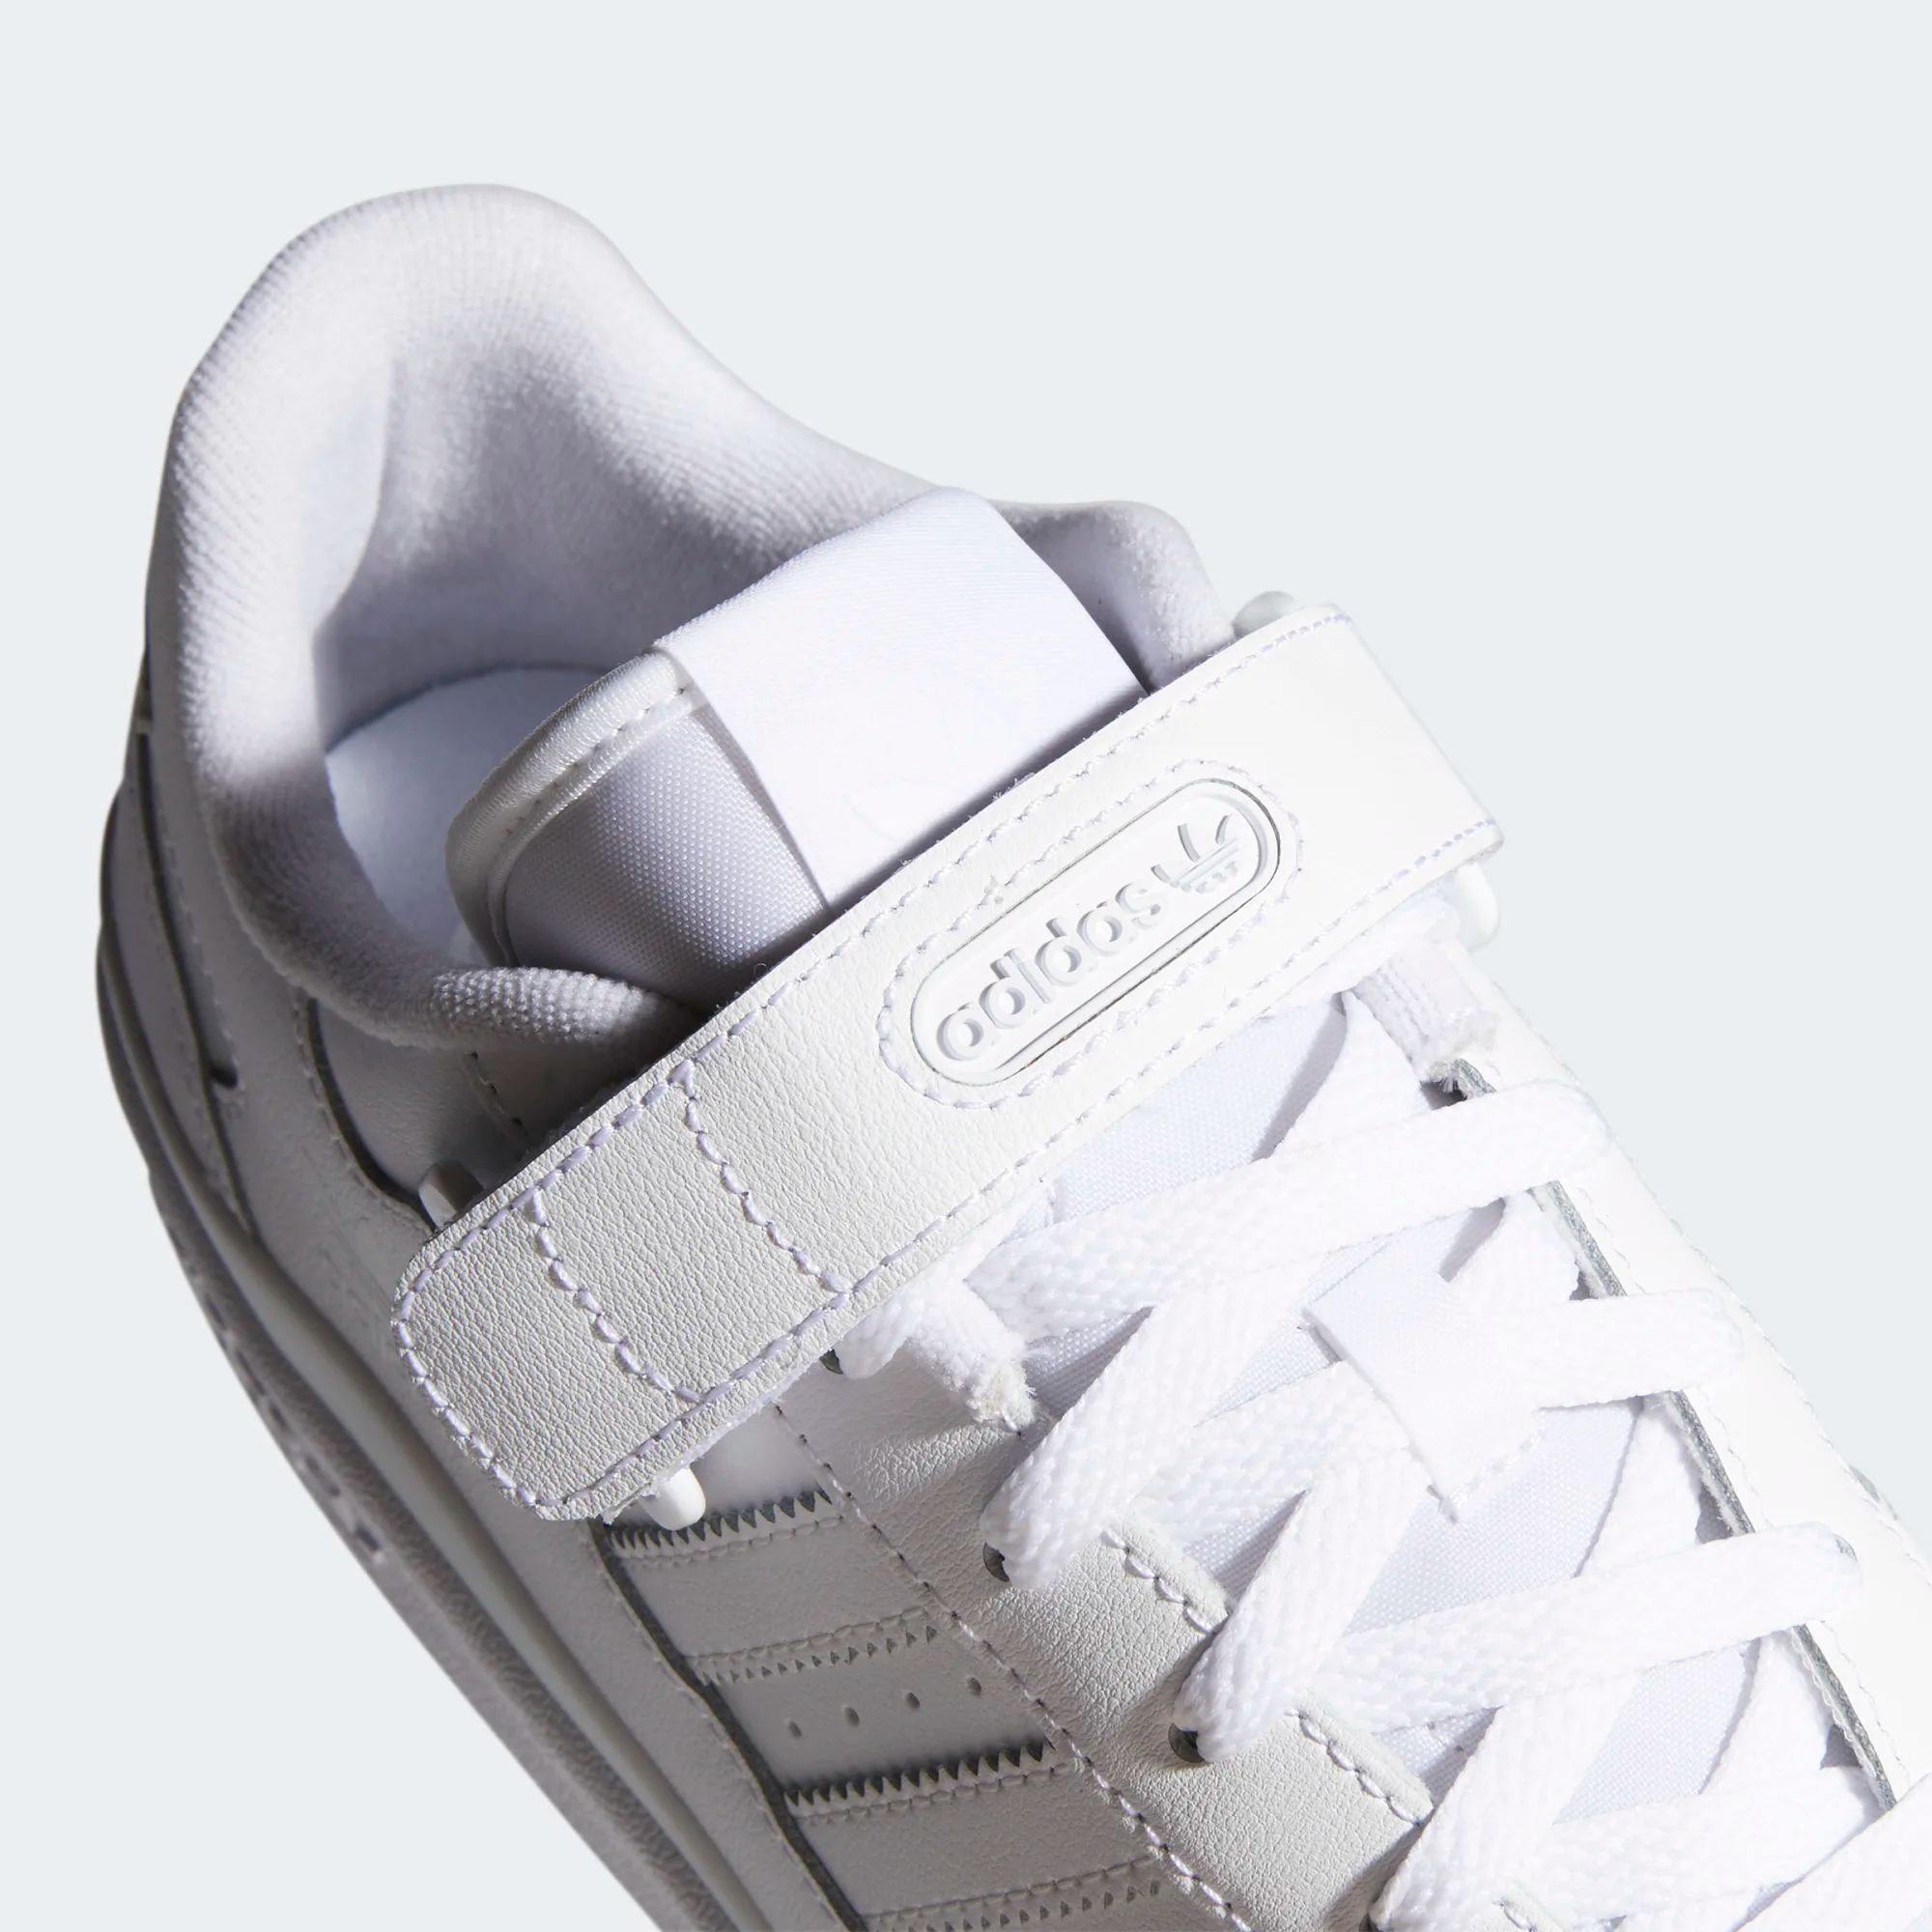 adidas Originals FORUM LOW - Trainers - off white cream white core